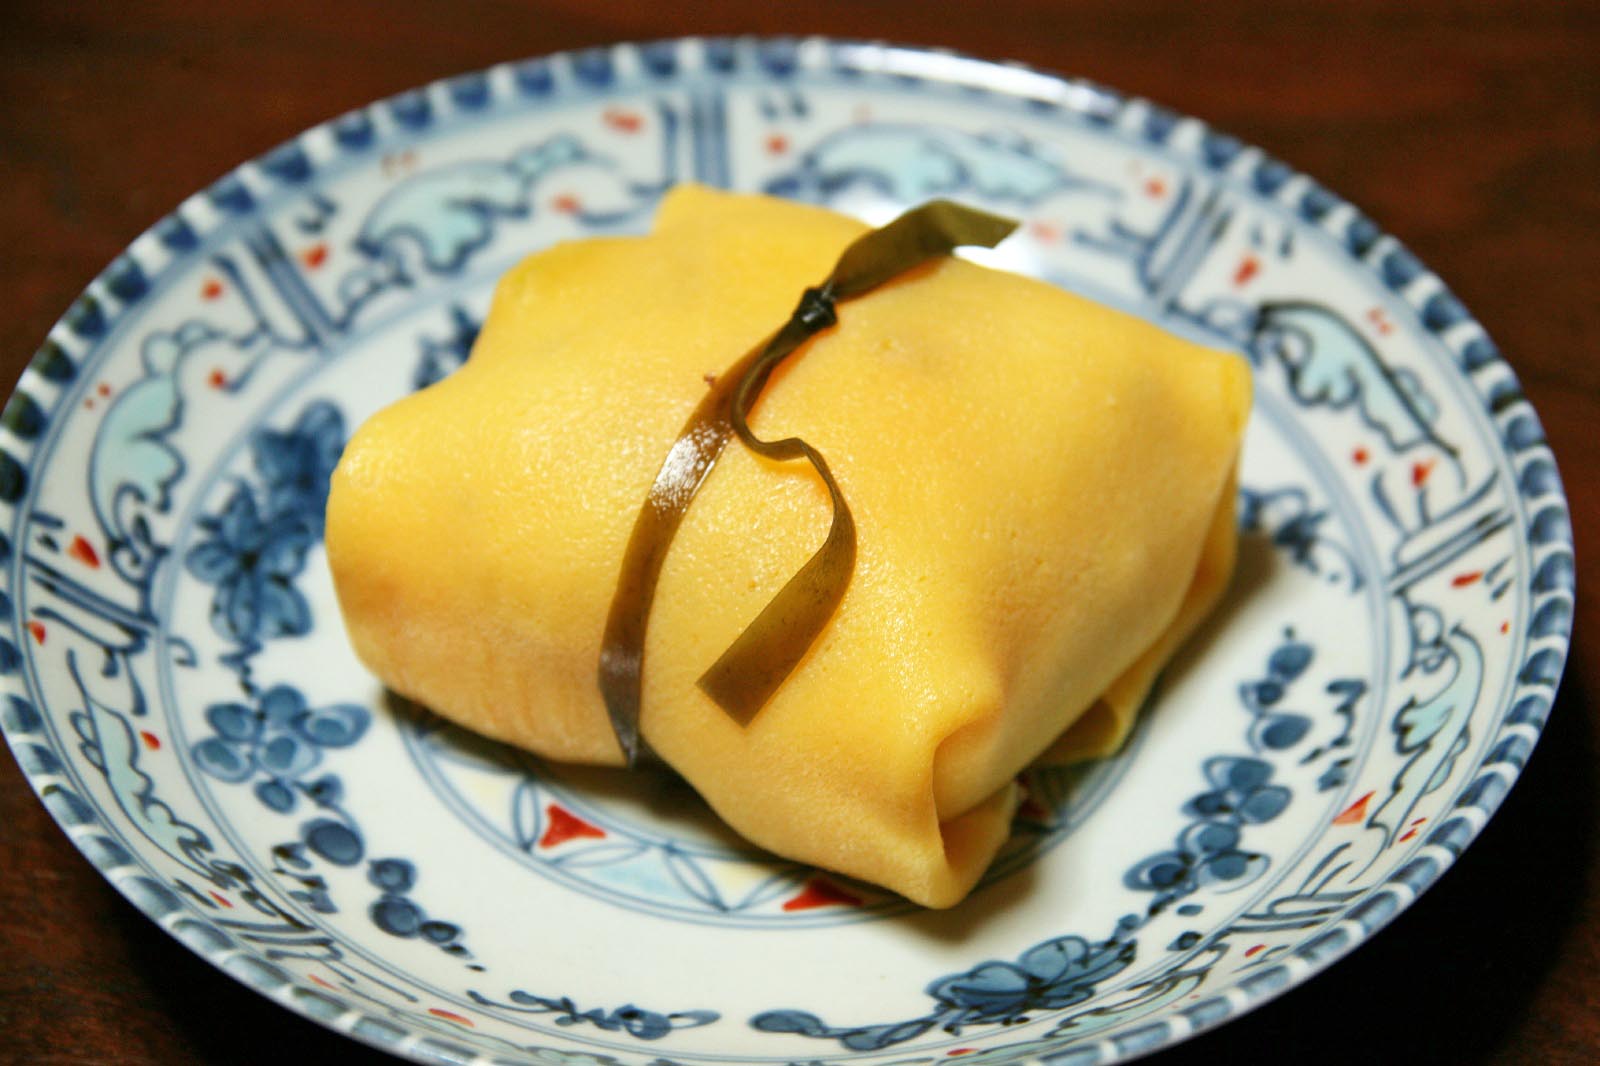 茶巾寿司 日本の食べ物用語辞典